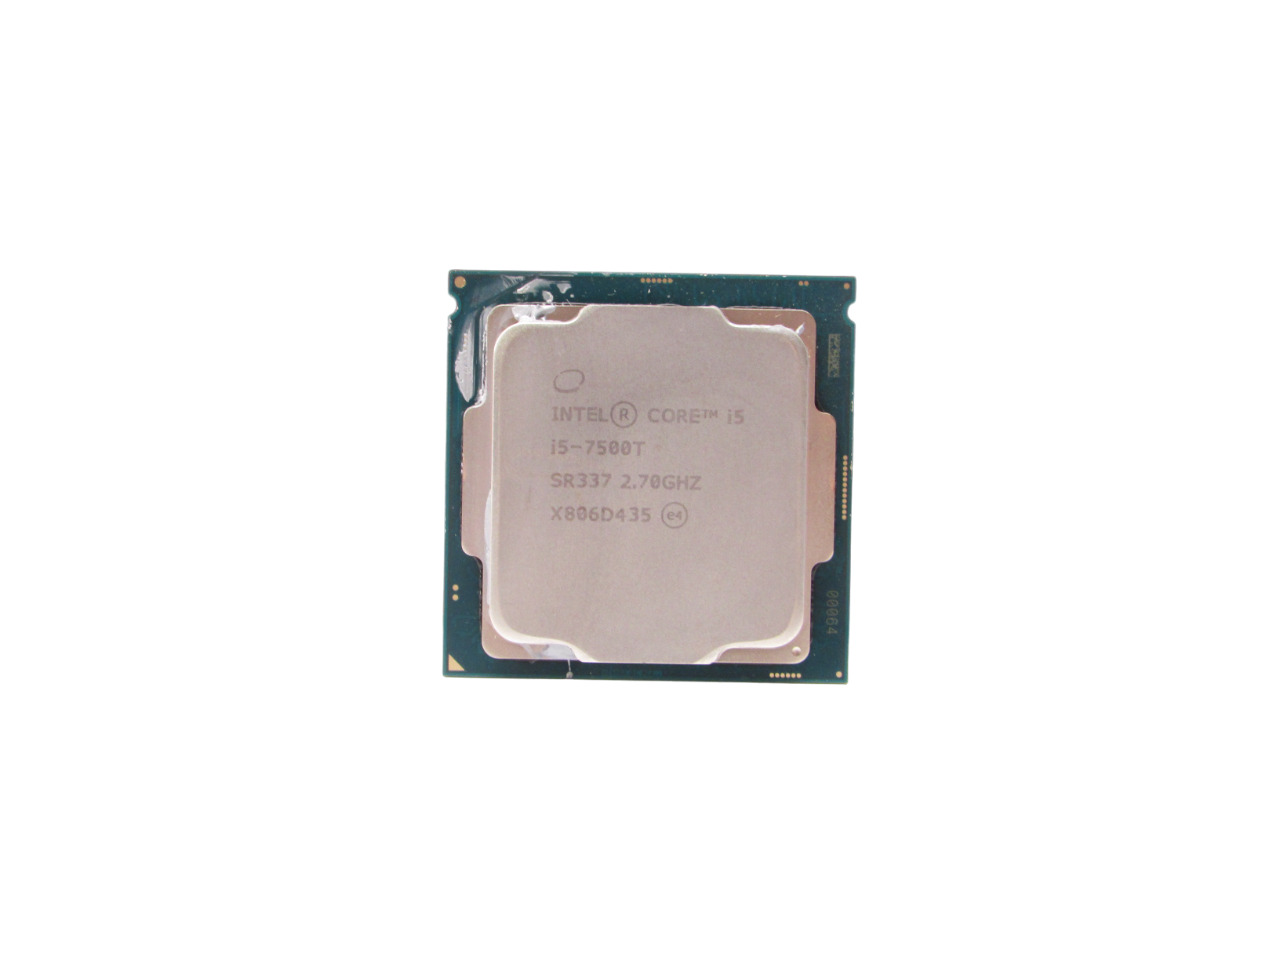 Intel Core i5-7500T 2.70GHz Quad Core SR337 6MB Cache FCLGA1151 Processor CPU